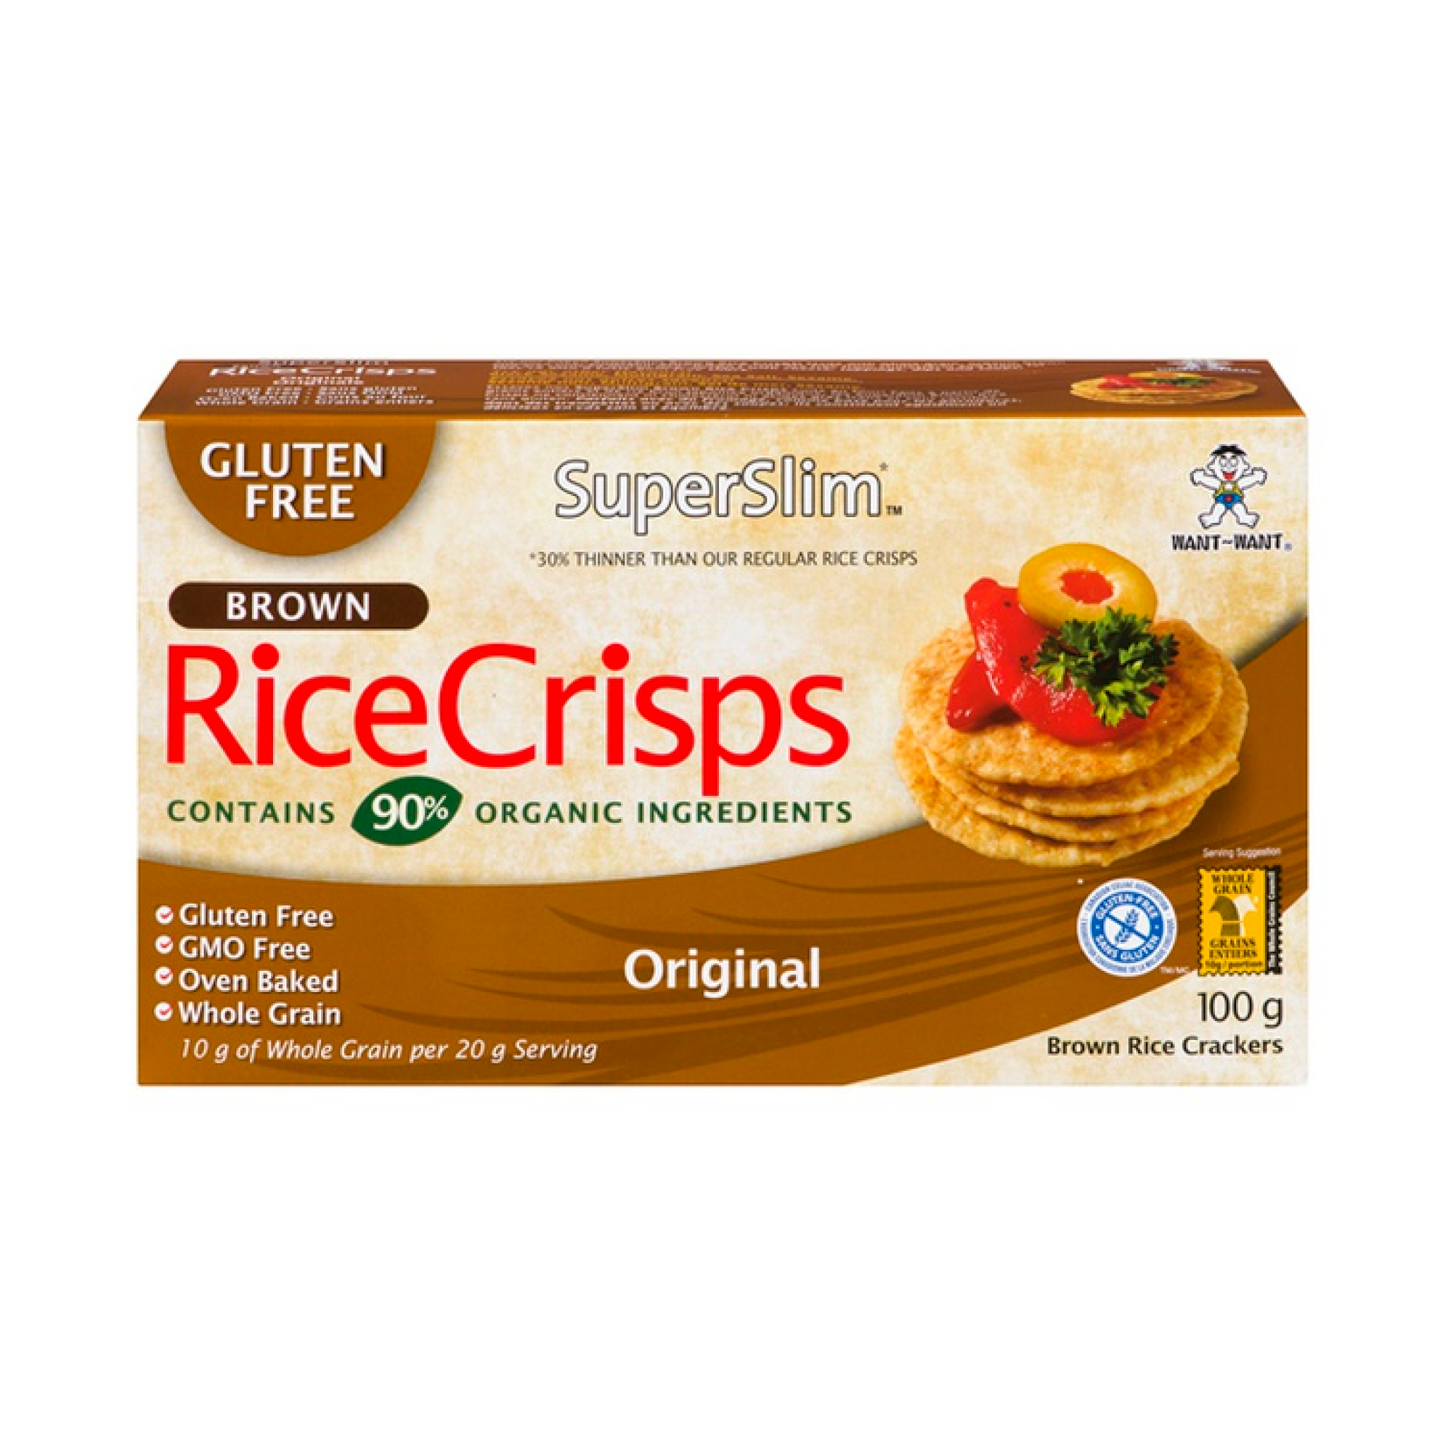 SuperSlim Original Rice Crisps 100g